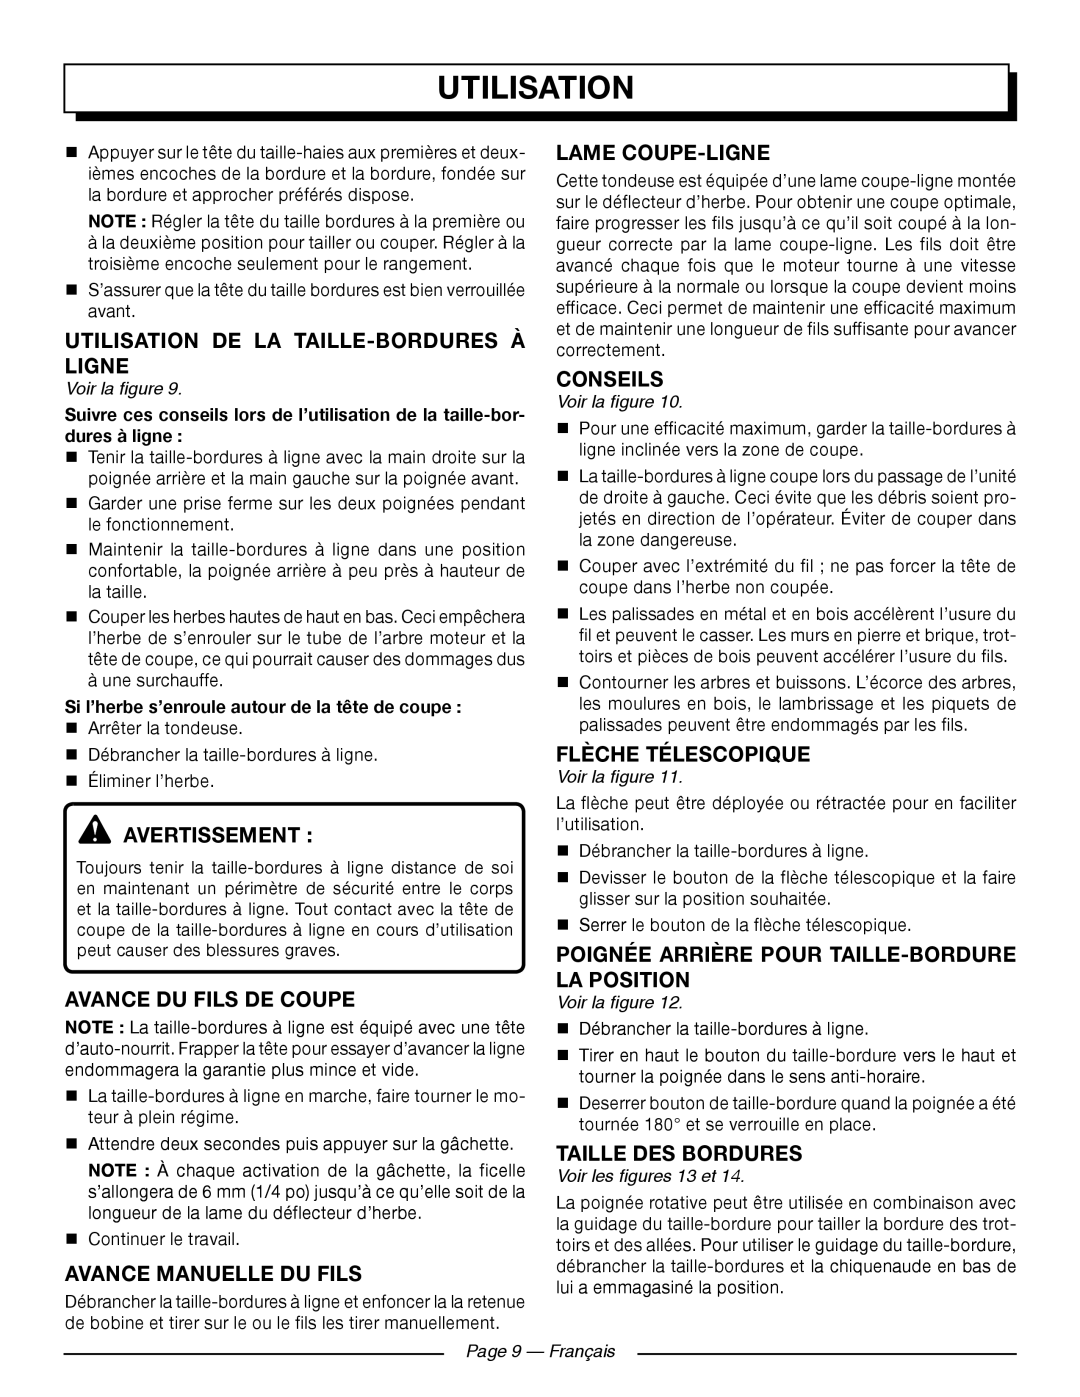 Homelite UT41121 Utilisation De La Taille-Borduresà Ligne, Avance Du Fils De Coupe, Avance Manuelle Du Fils, Conseils 